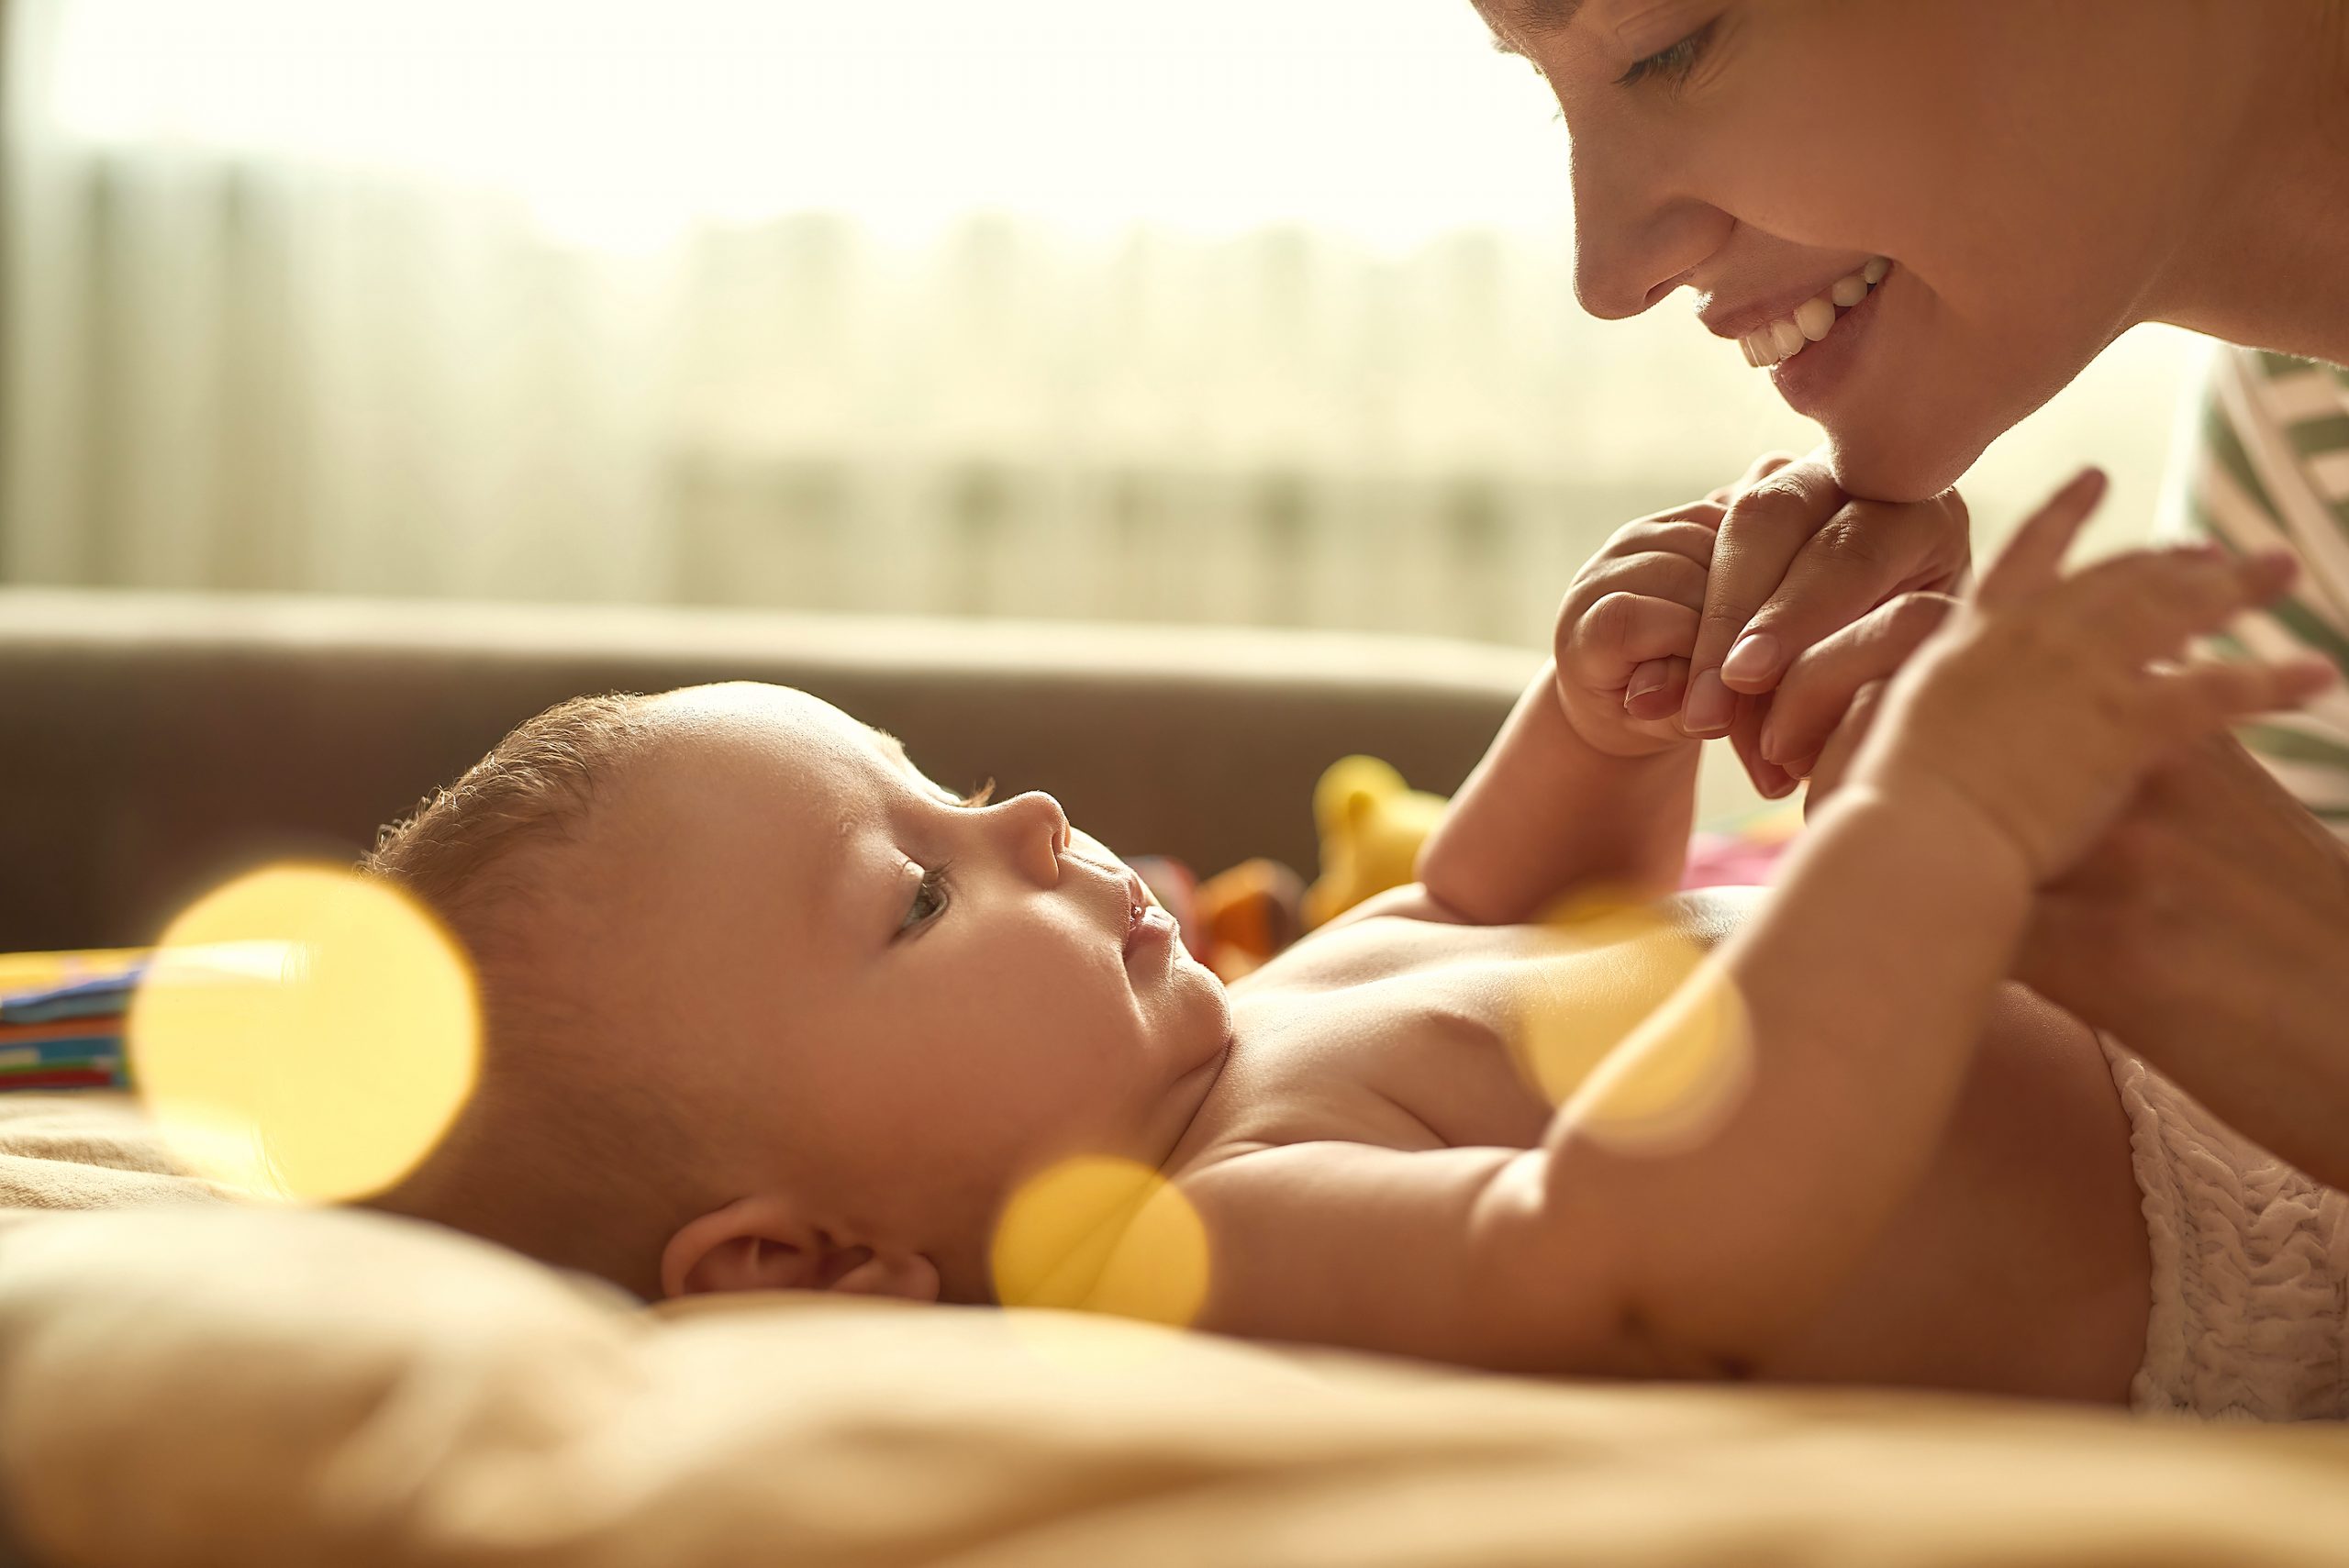 La importancia del tacto entre madre y bebé